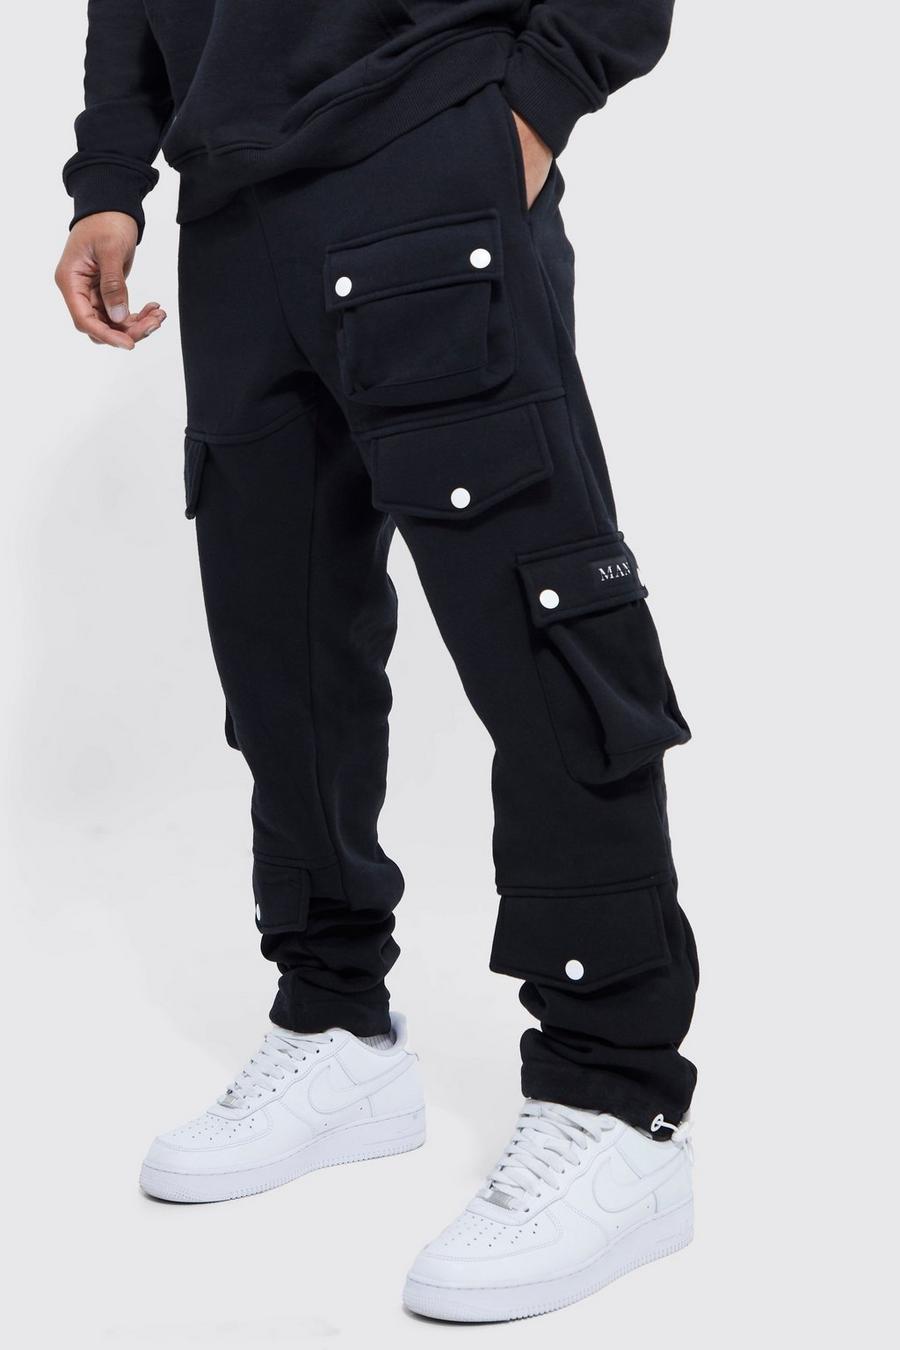 שחור black מכנסי טרנינג דגמ'ח עם כיסים מרובים וחפתים לגברים גבוהים